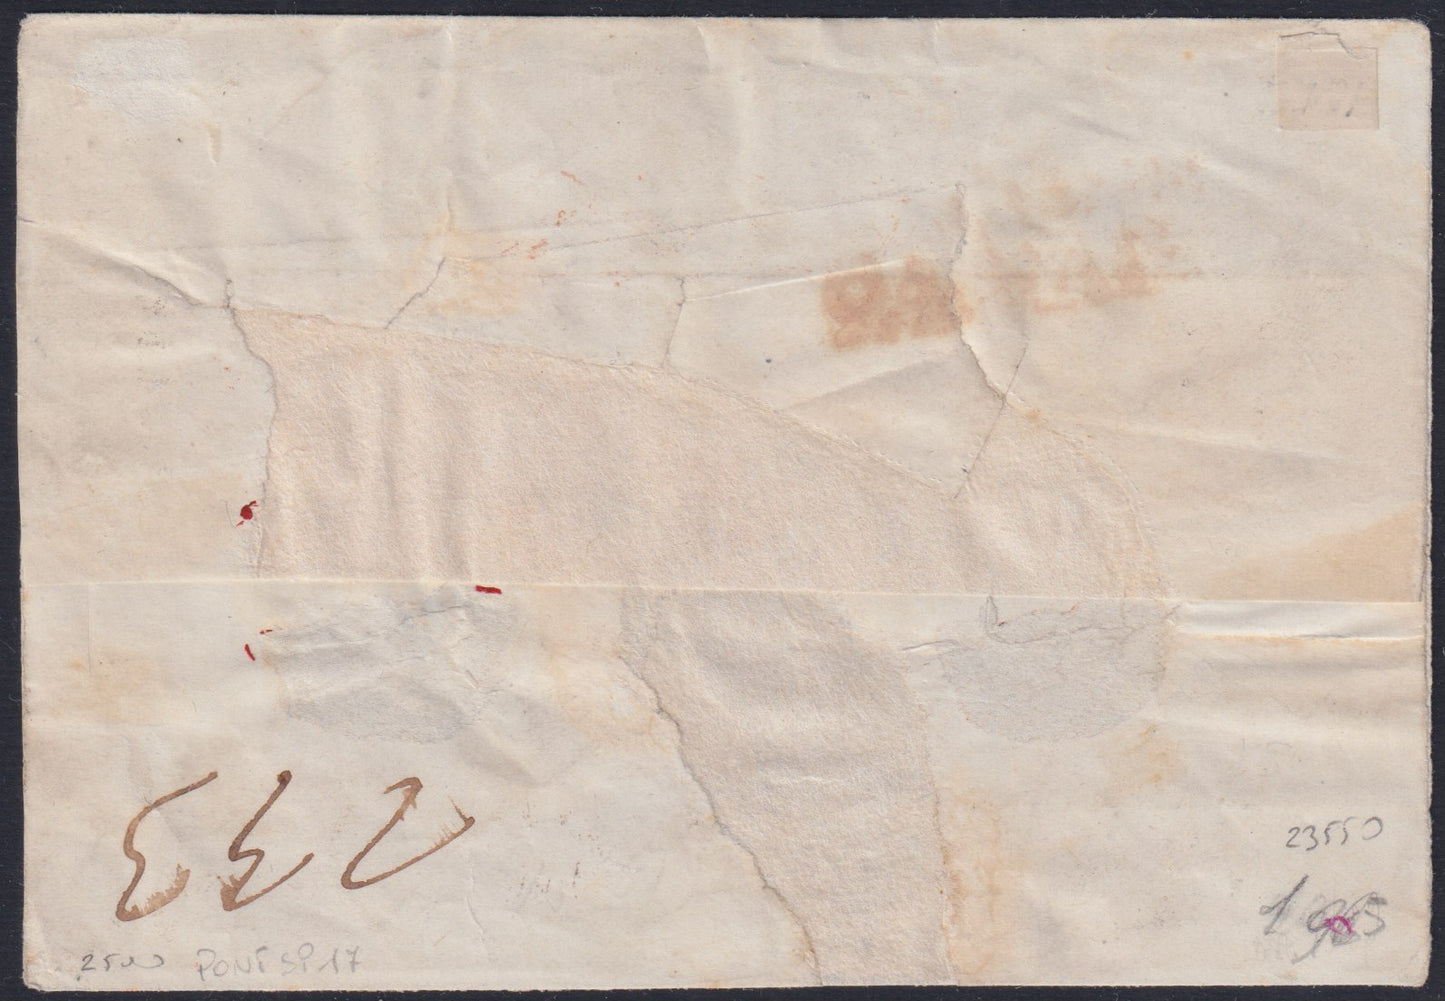 PontSP17 - 1855 - Carta enviada de ROMA a Nápoles el 22/5/55 franqueada con 3 baj bistro naranjas en tinta gris aceitosa + 5 pares de baj rosas + 50 baj azules (4e + 6 + 10)